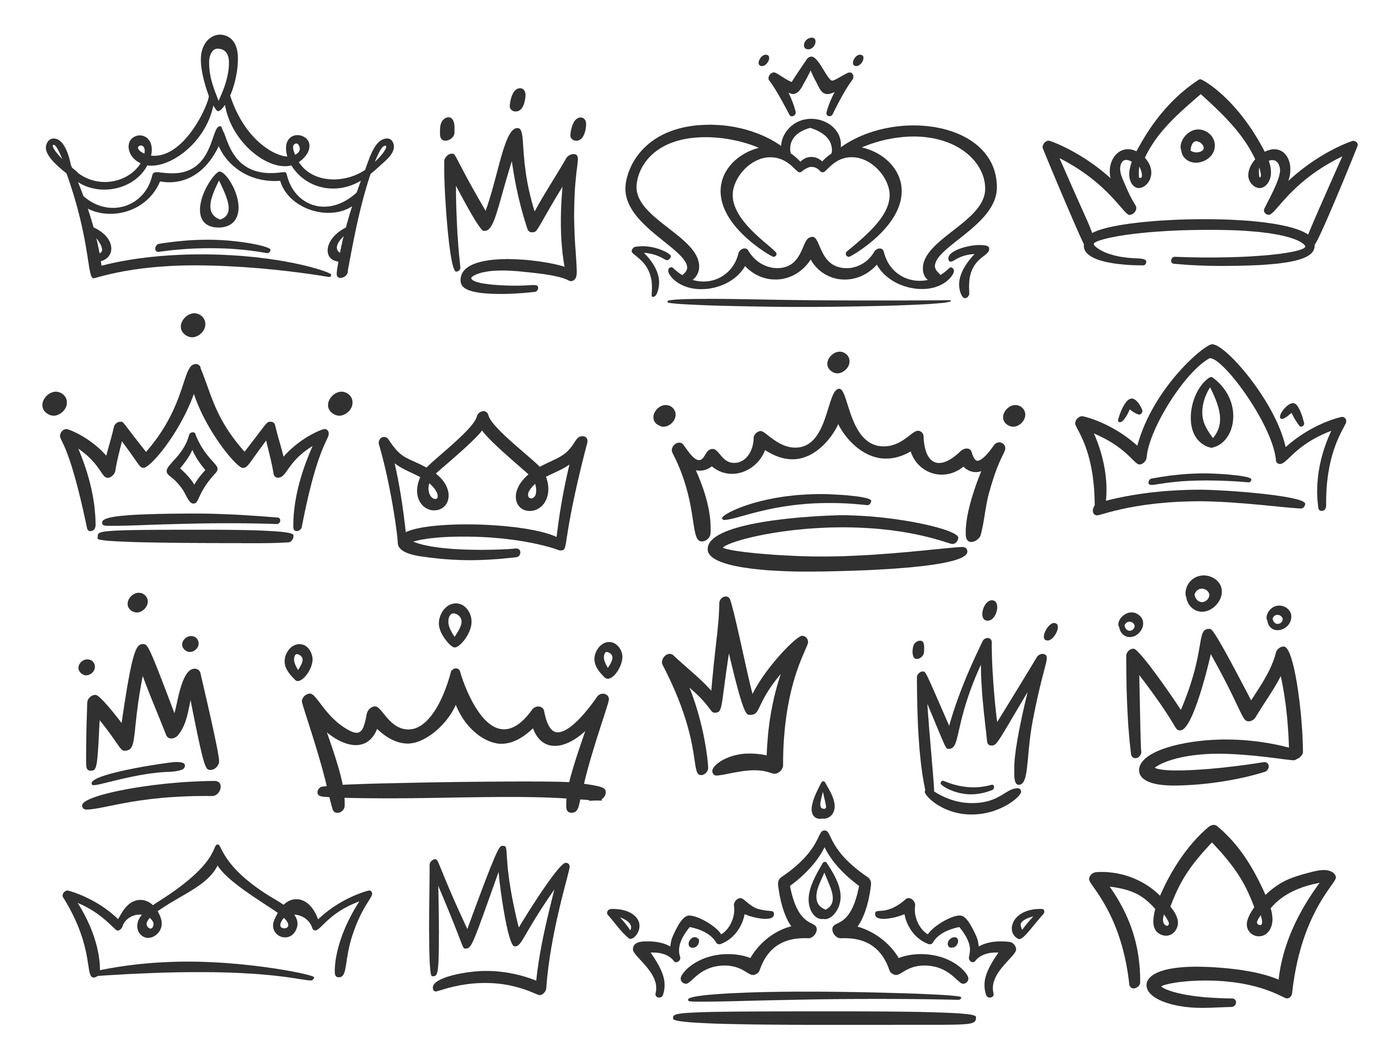 Sketch crown. Simple graffiti crowning, elegant queen or king crowns h